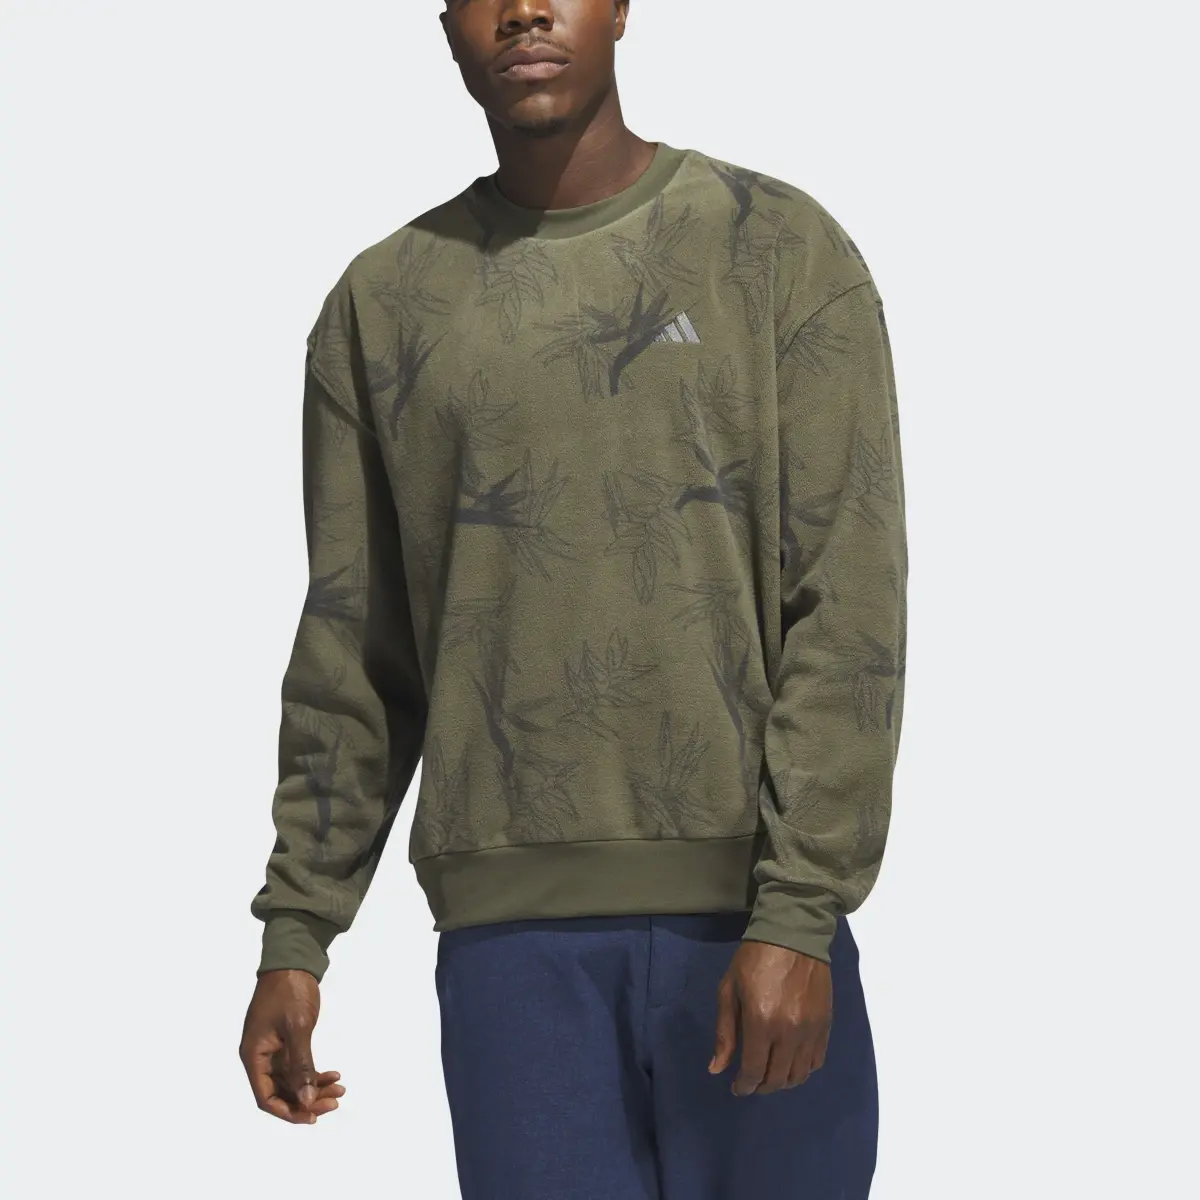 Adidas Sweatshirt Oasis. 1